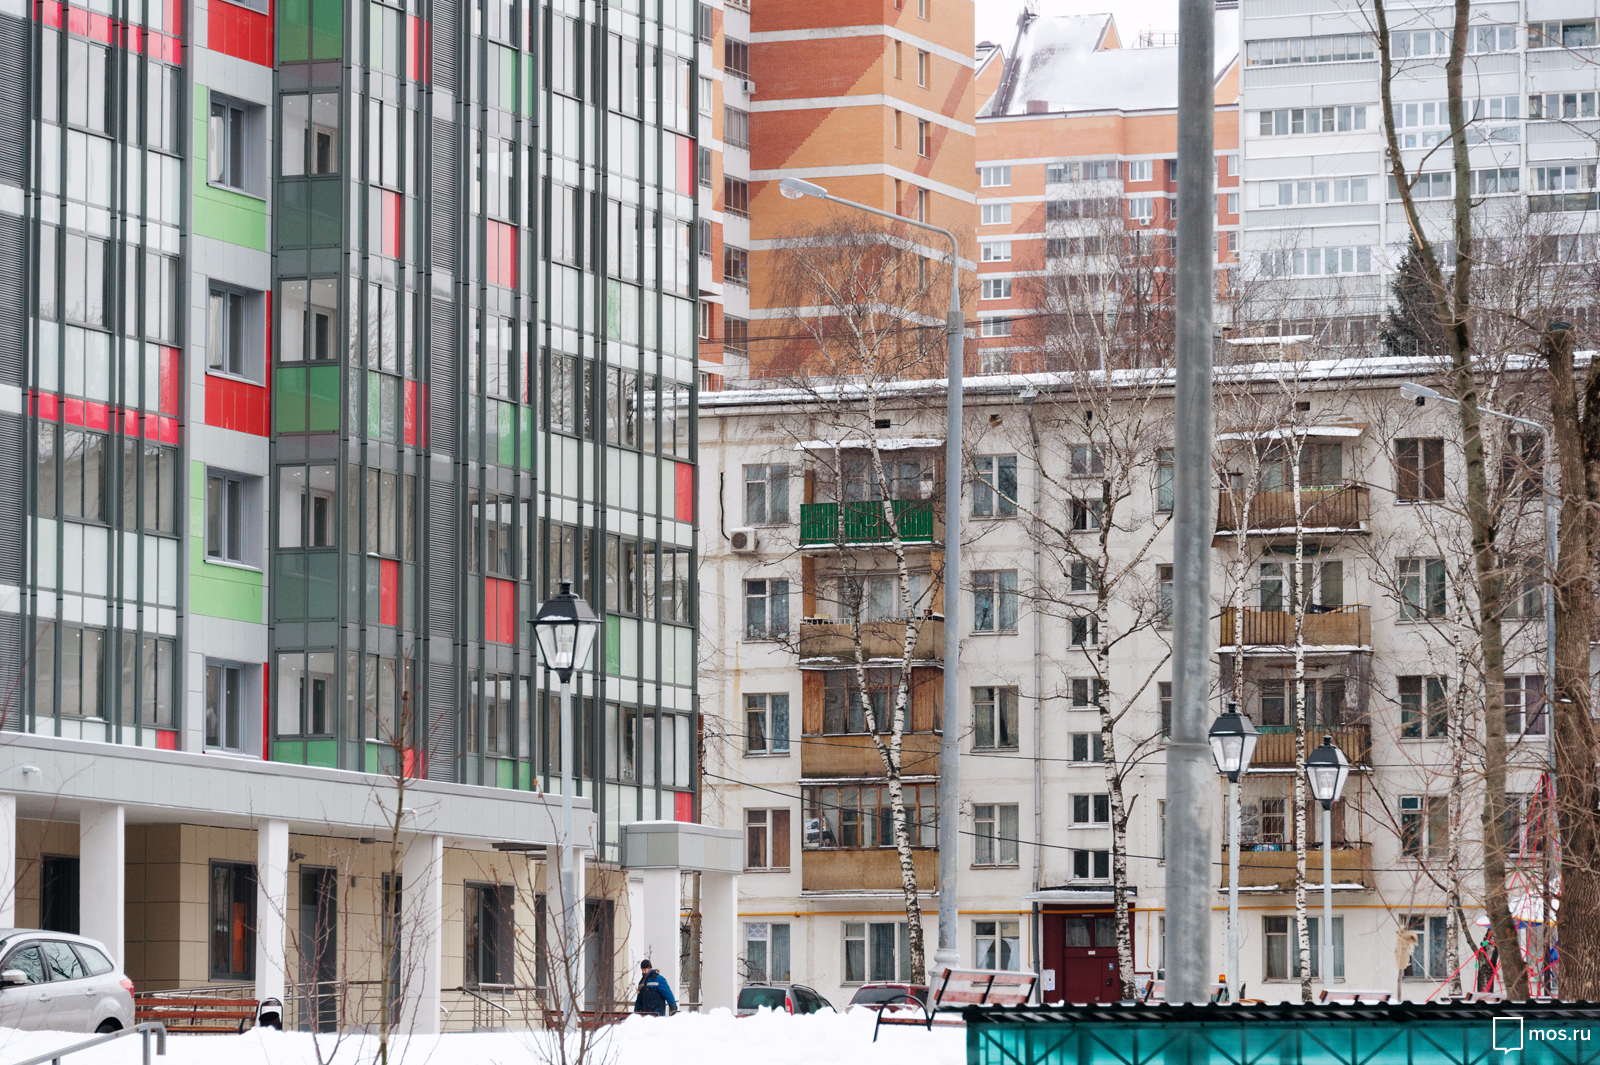 О программе реновации жилья знают почти все москвичи - ВЦИОМ